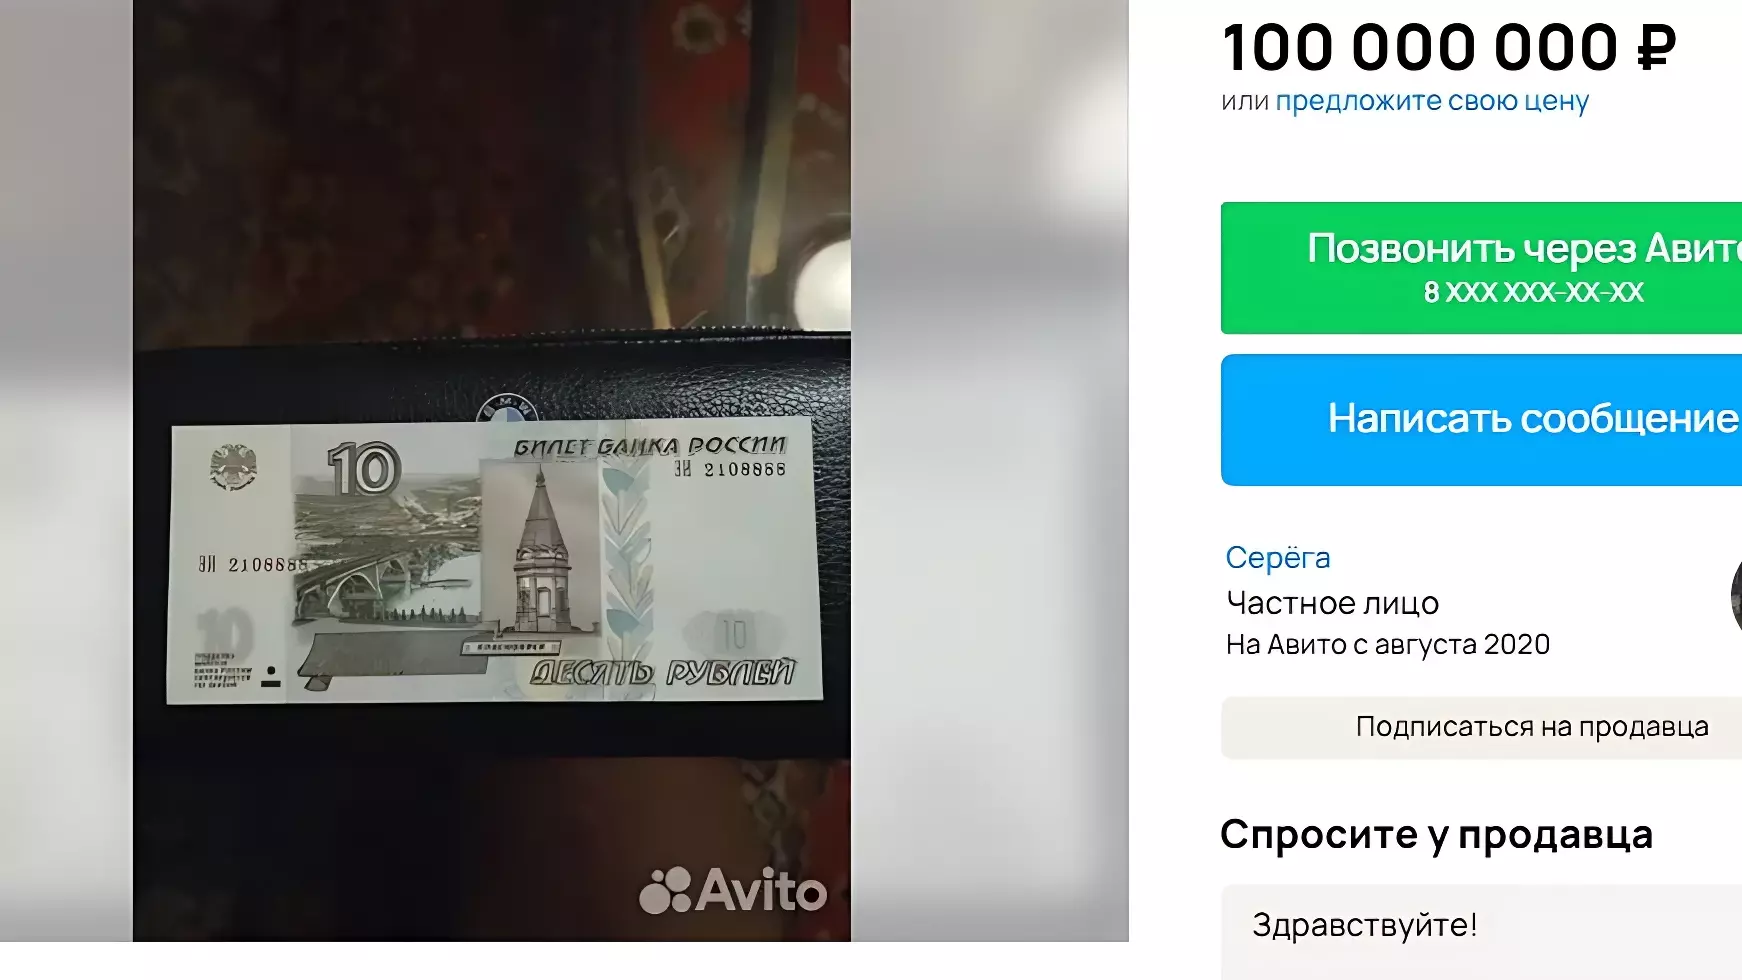 За 10-рублёвую купюру волгоградец просит 100 млн рублей